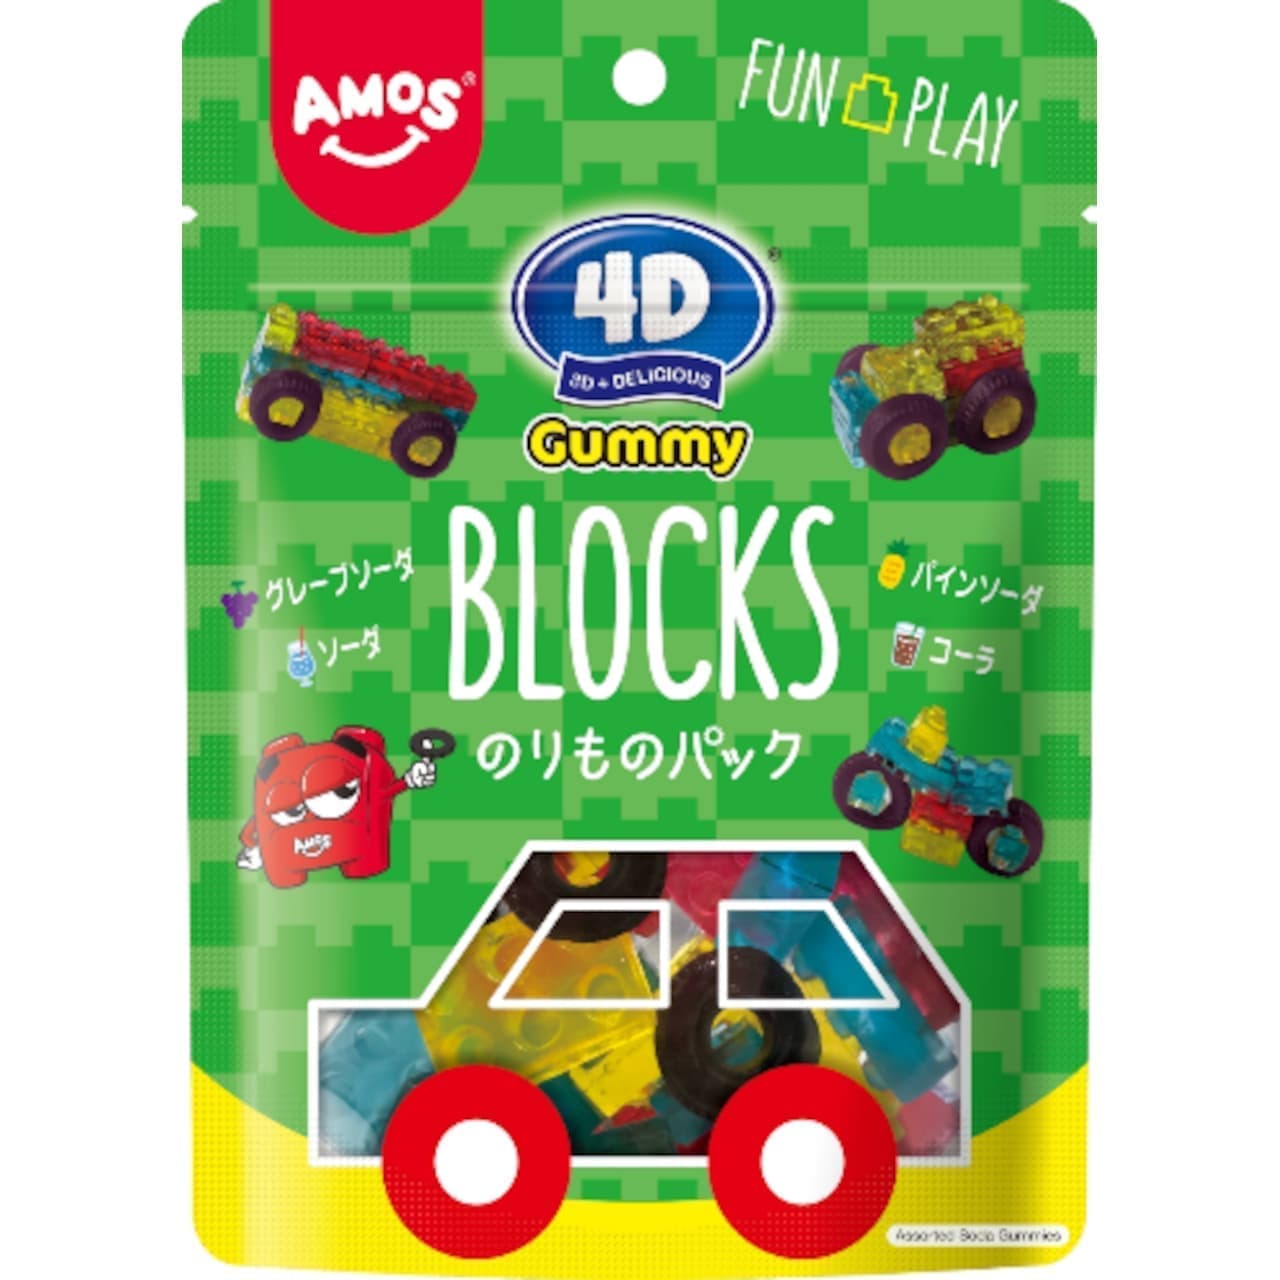 カンロ「4Dグミブロックス のりものパック」パッケージデザイン